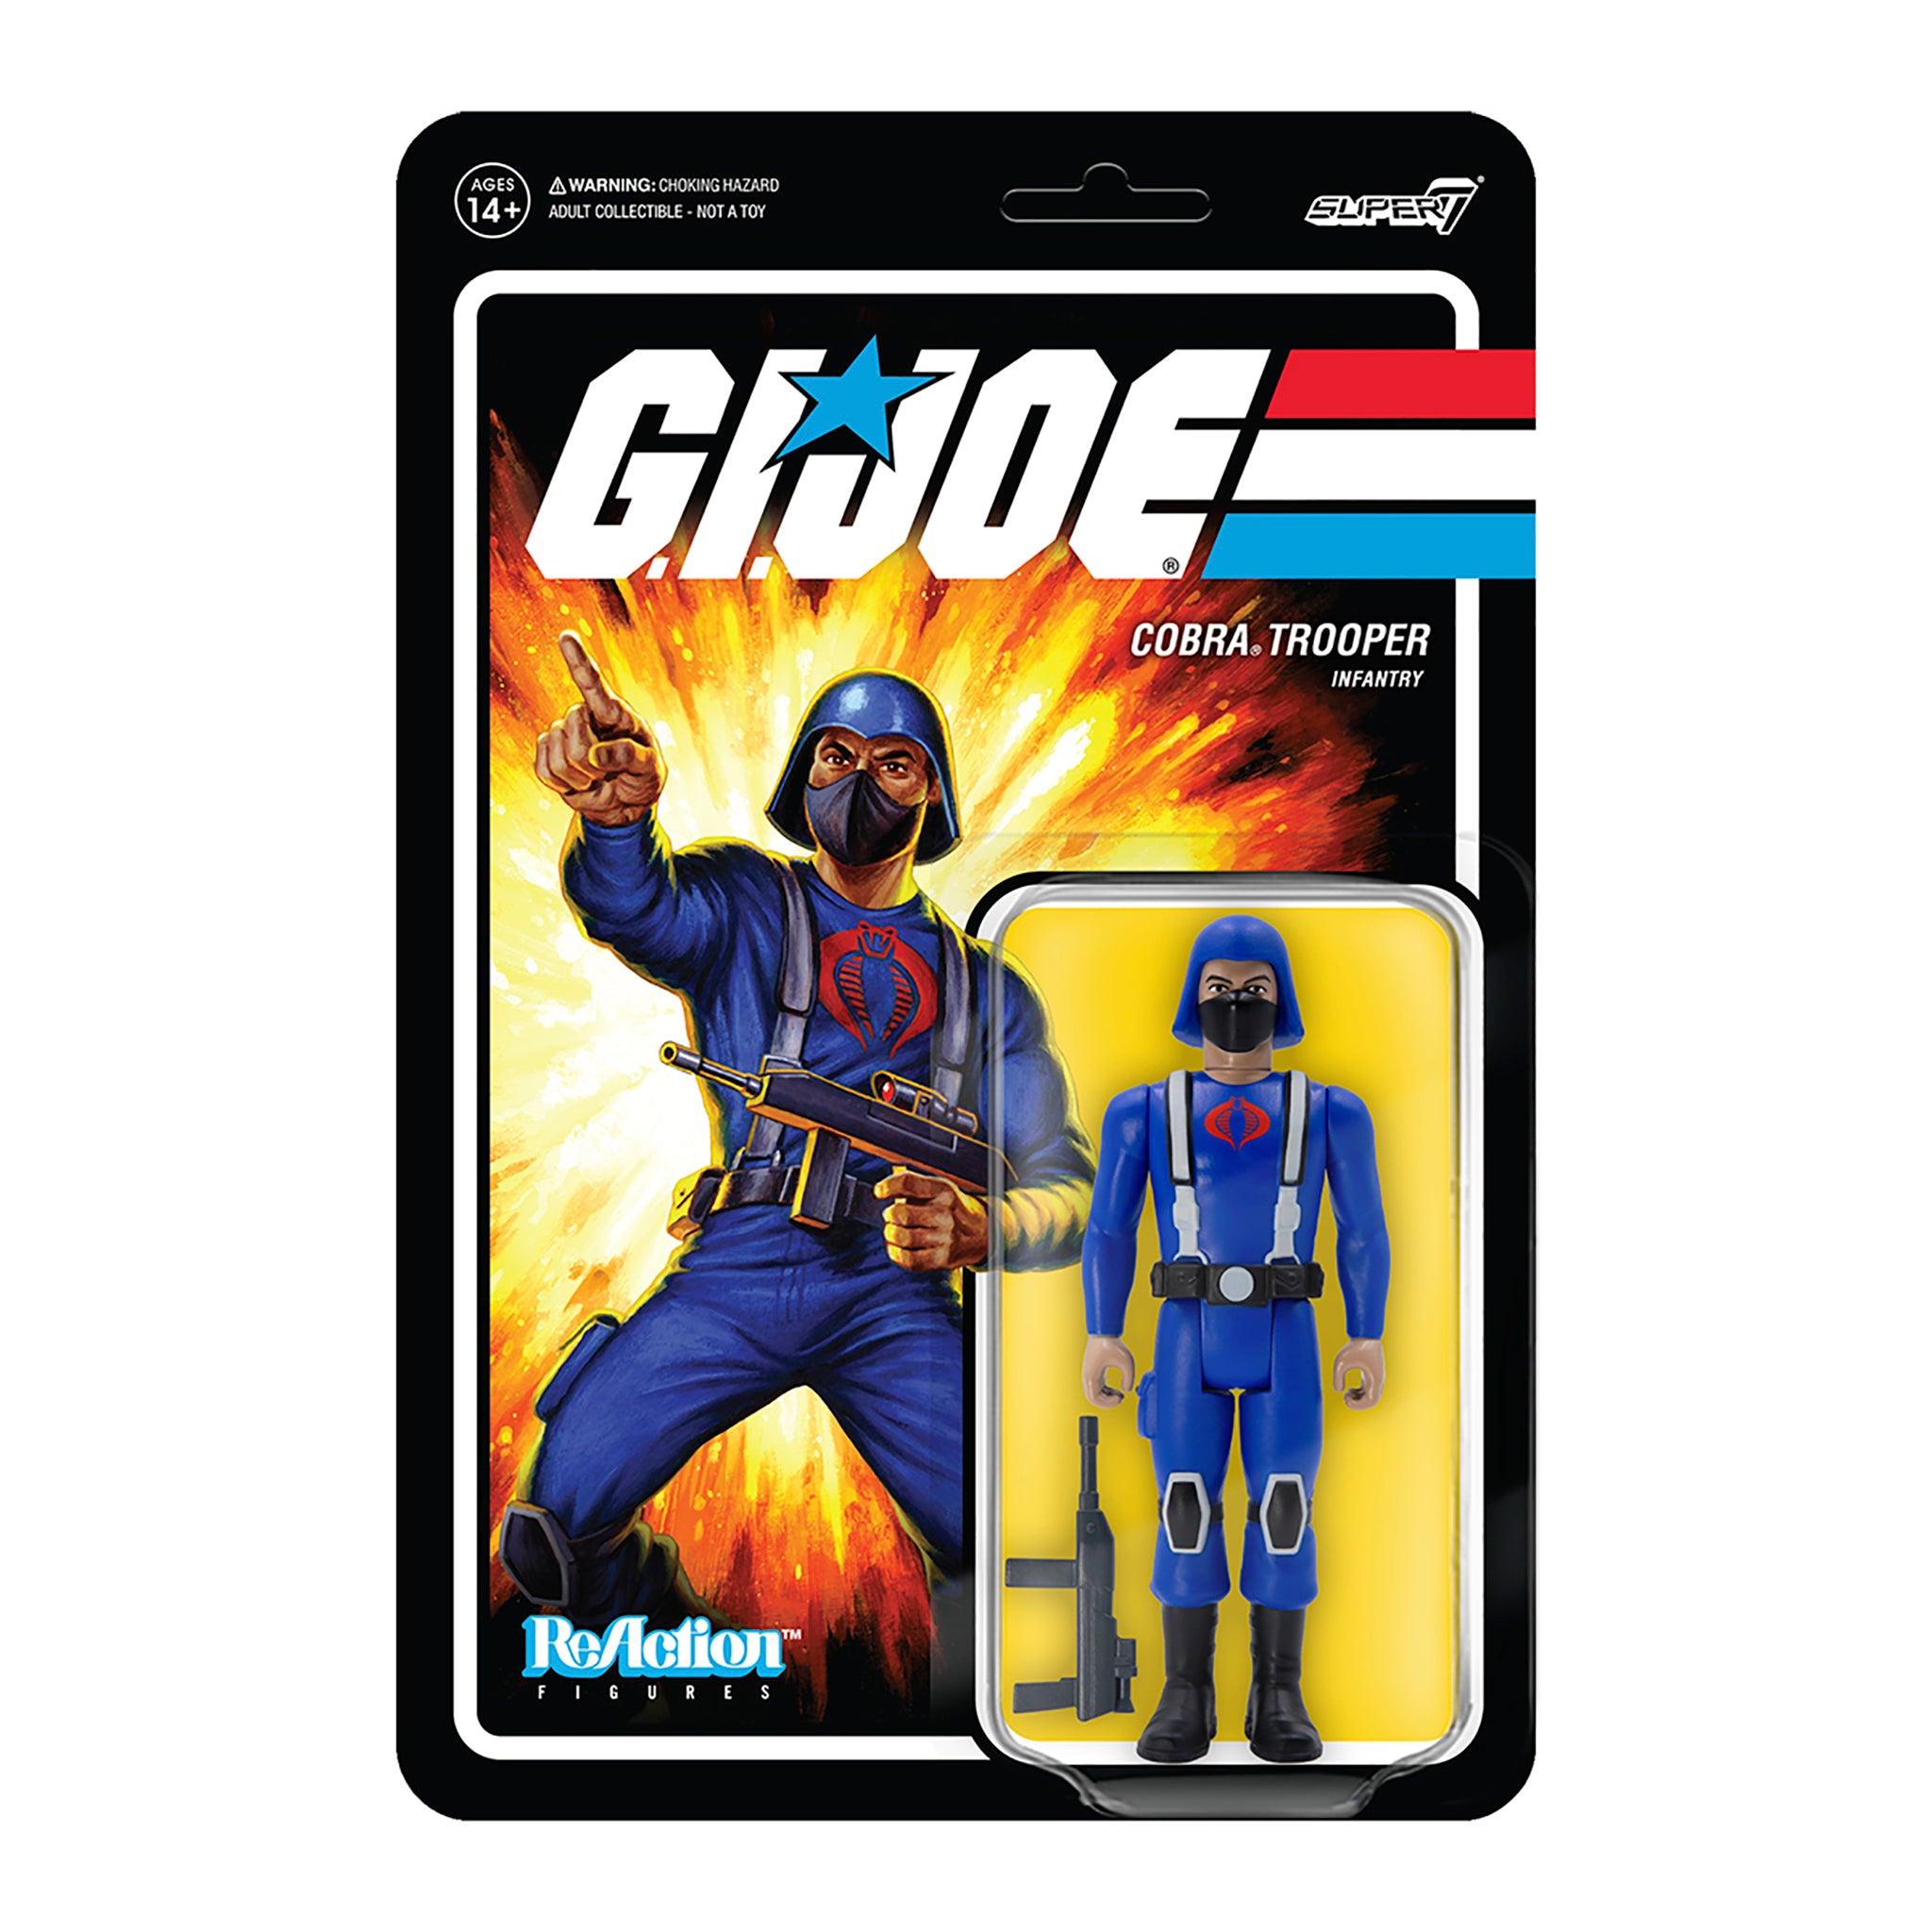 G.I. Joe ReAction Figures Wave 1 - Cobra Trooper Y-back (Tan)